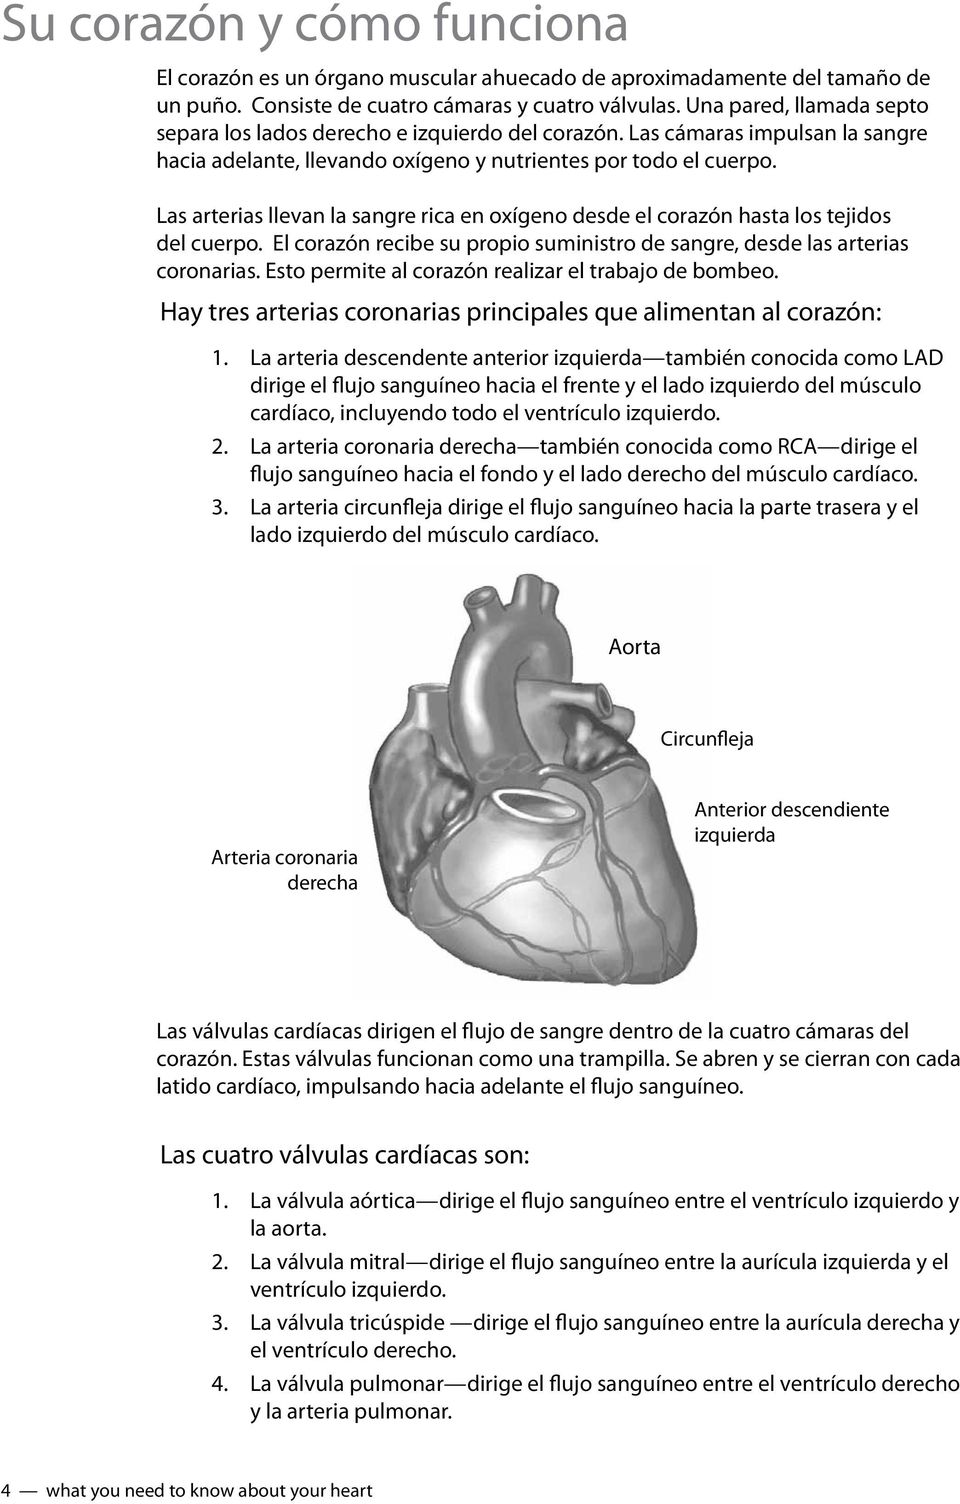 Las arterias llevan la sangre rica en oxígeno desde el corazón hasta los tejidos del cuerpo. El corazón recibe su propio suministro de sangre, desde las arterias coronarias.